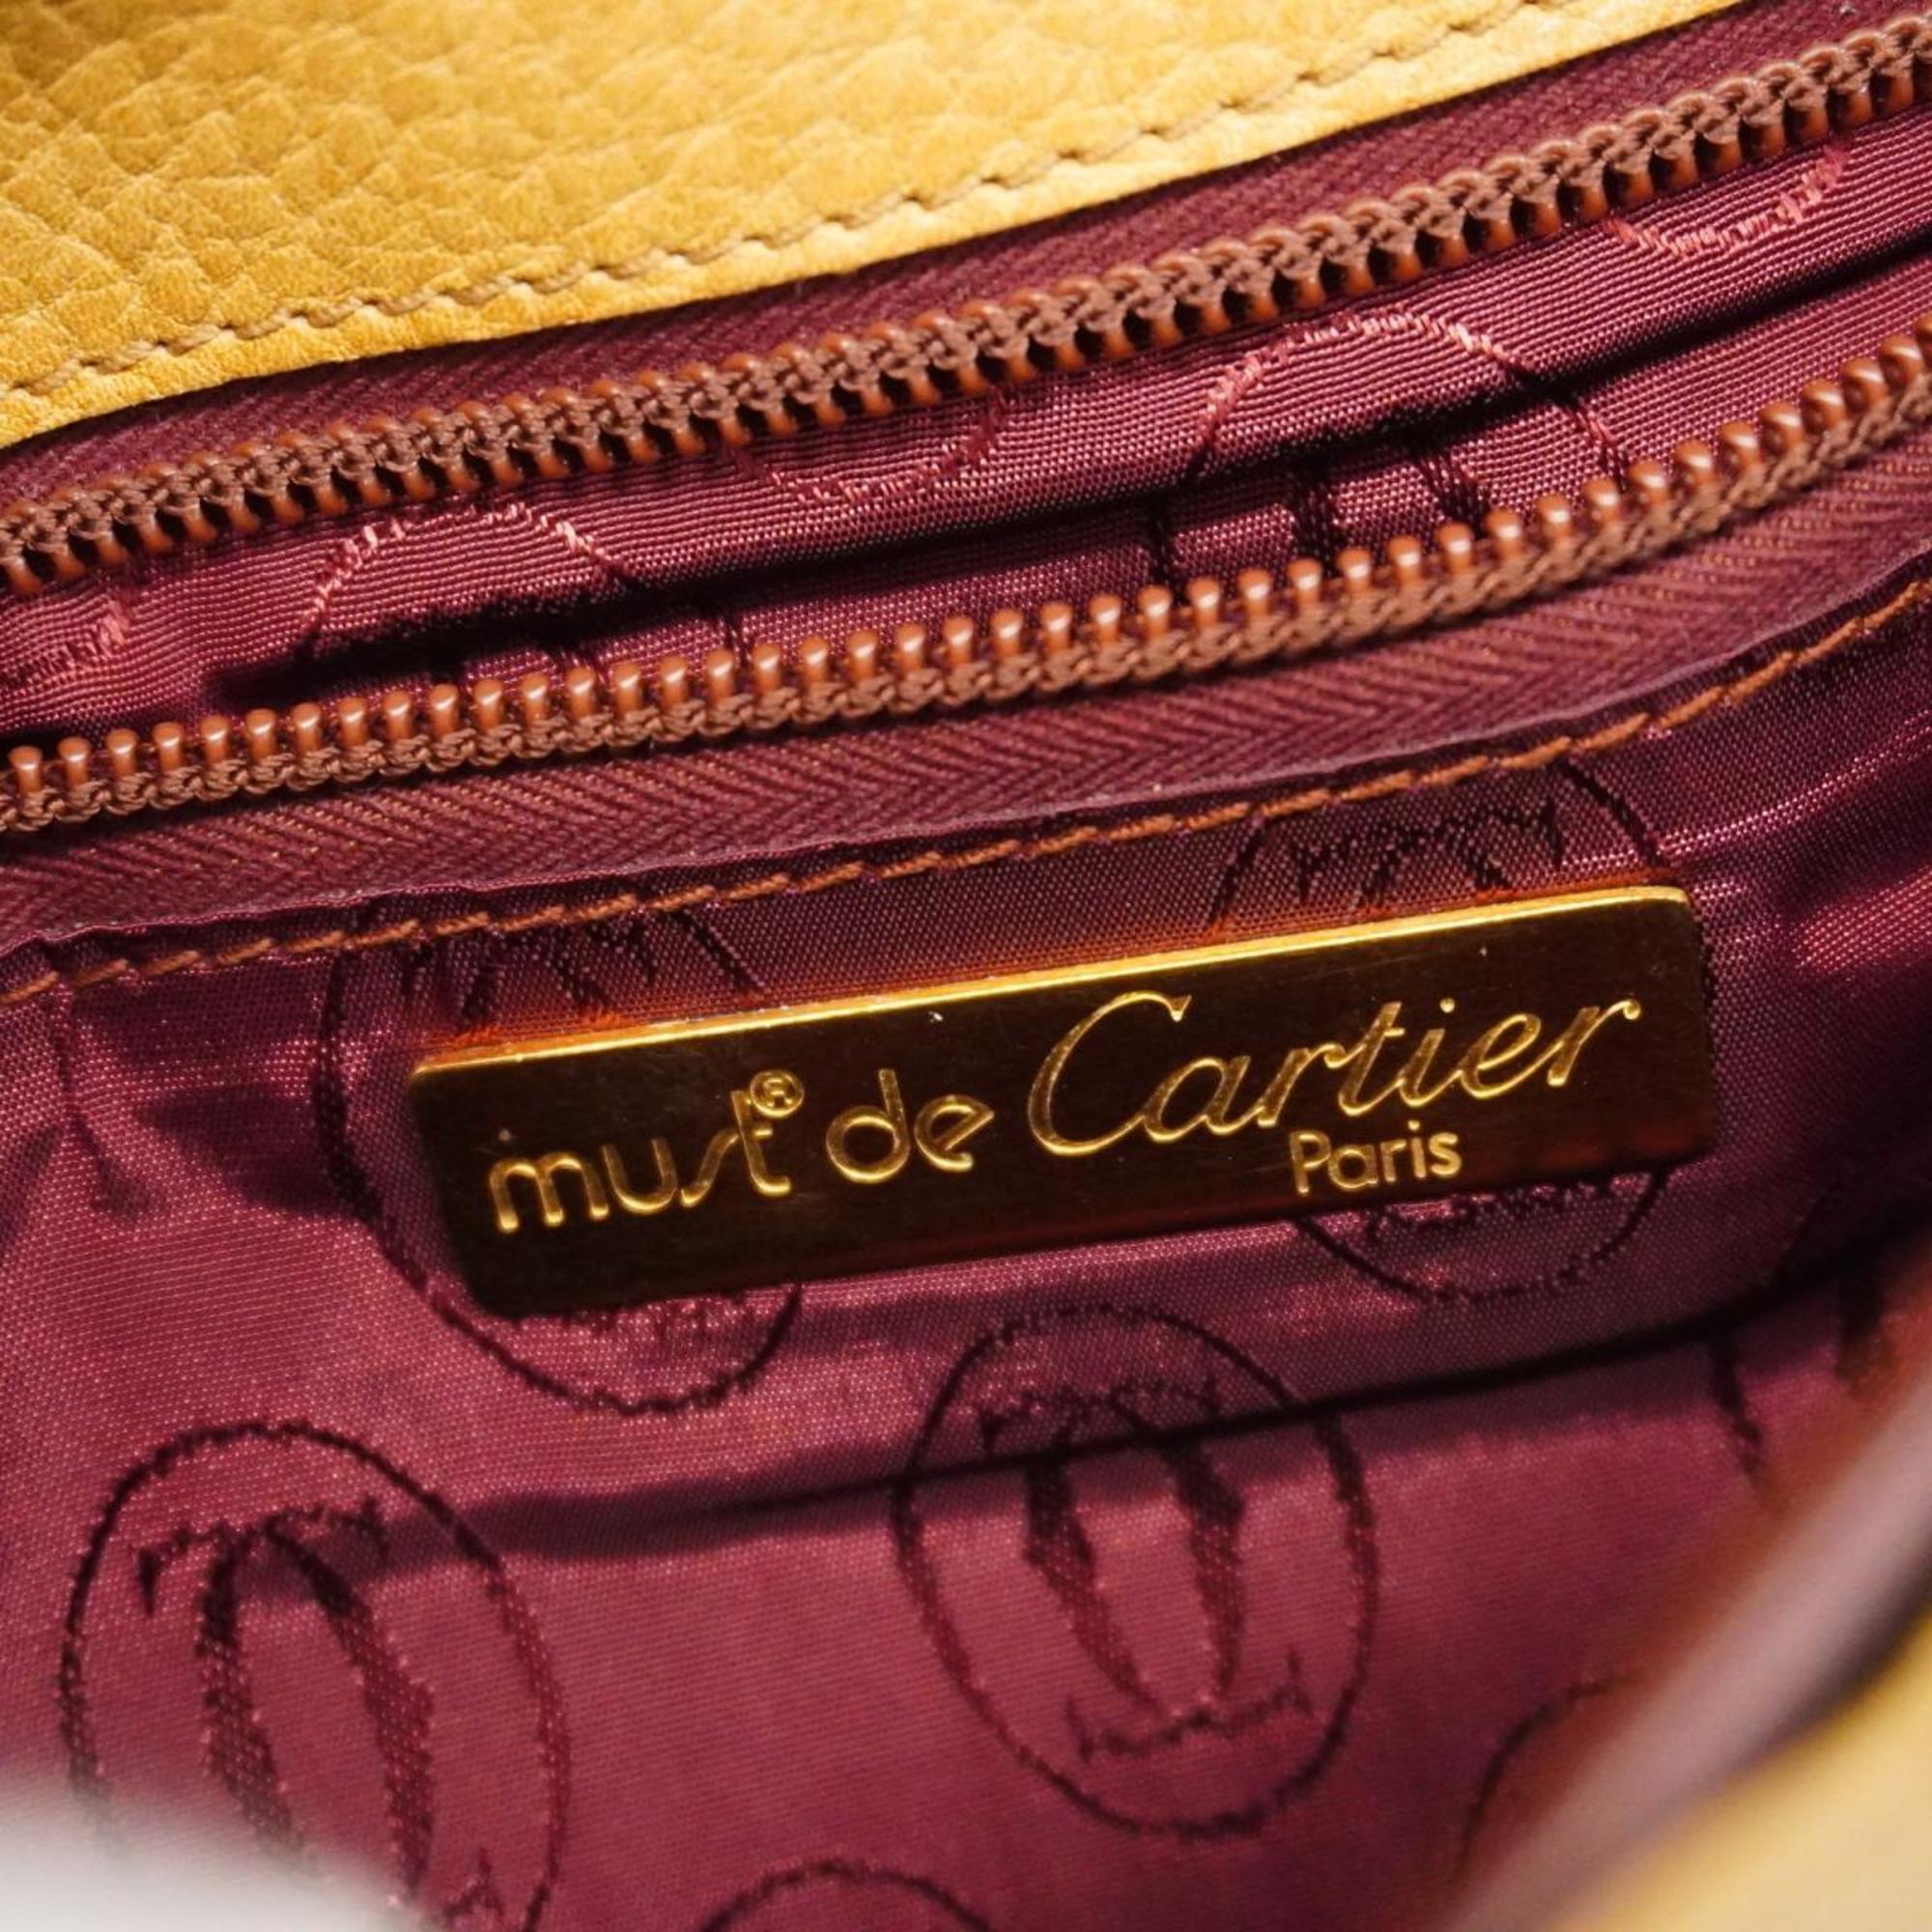 Cartier Shoulder Bag Must Leather Khaki Ladies